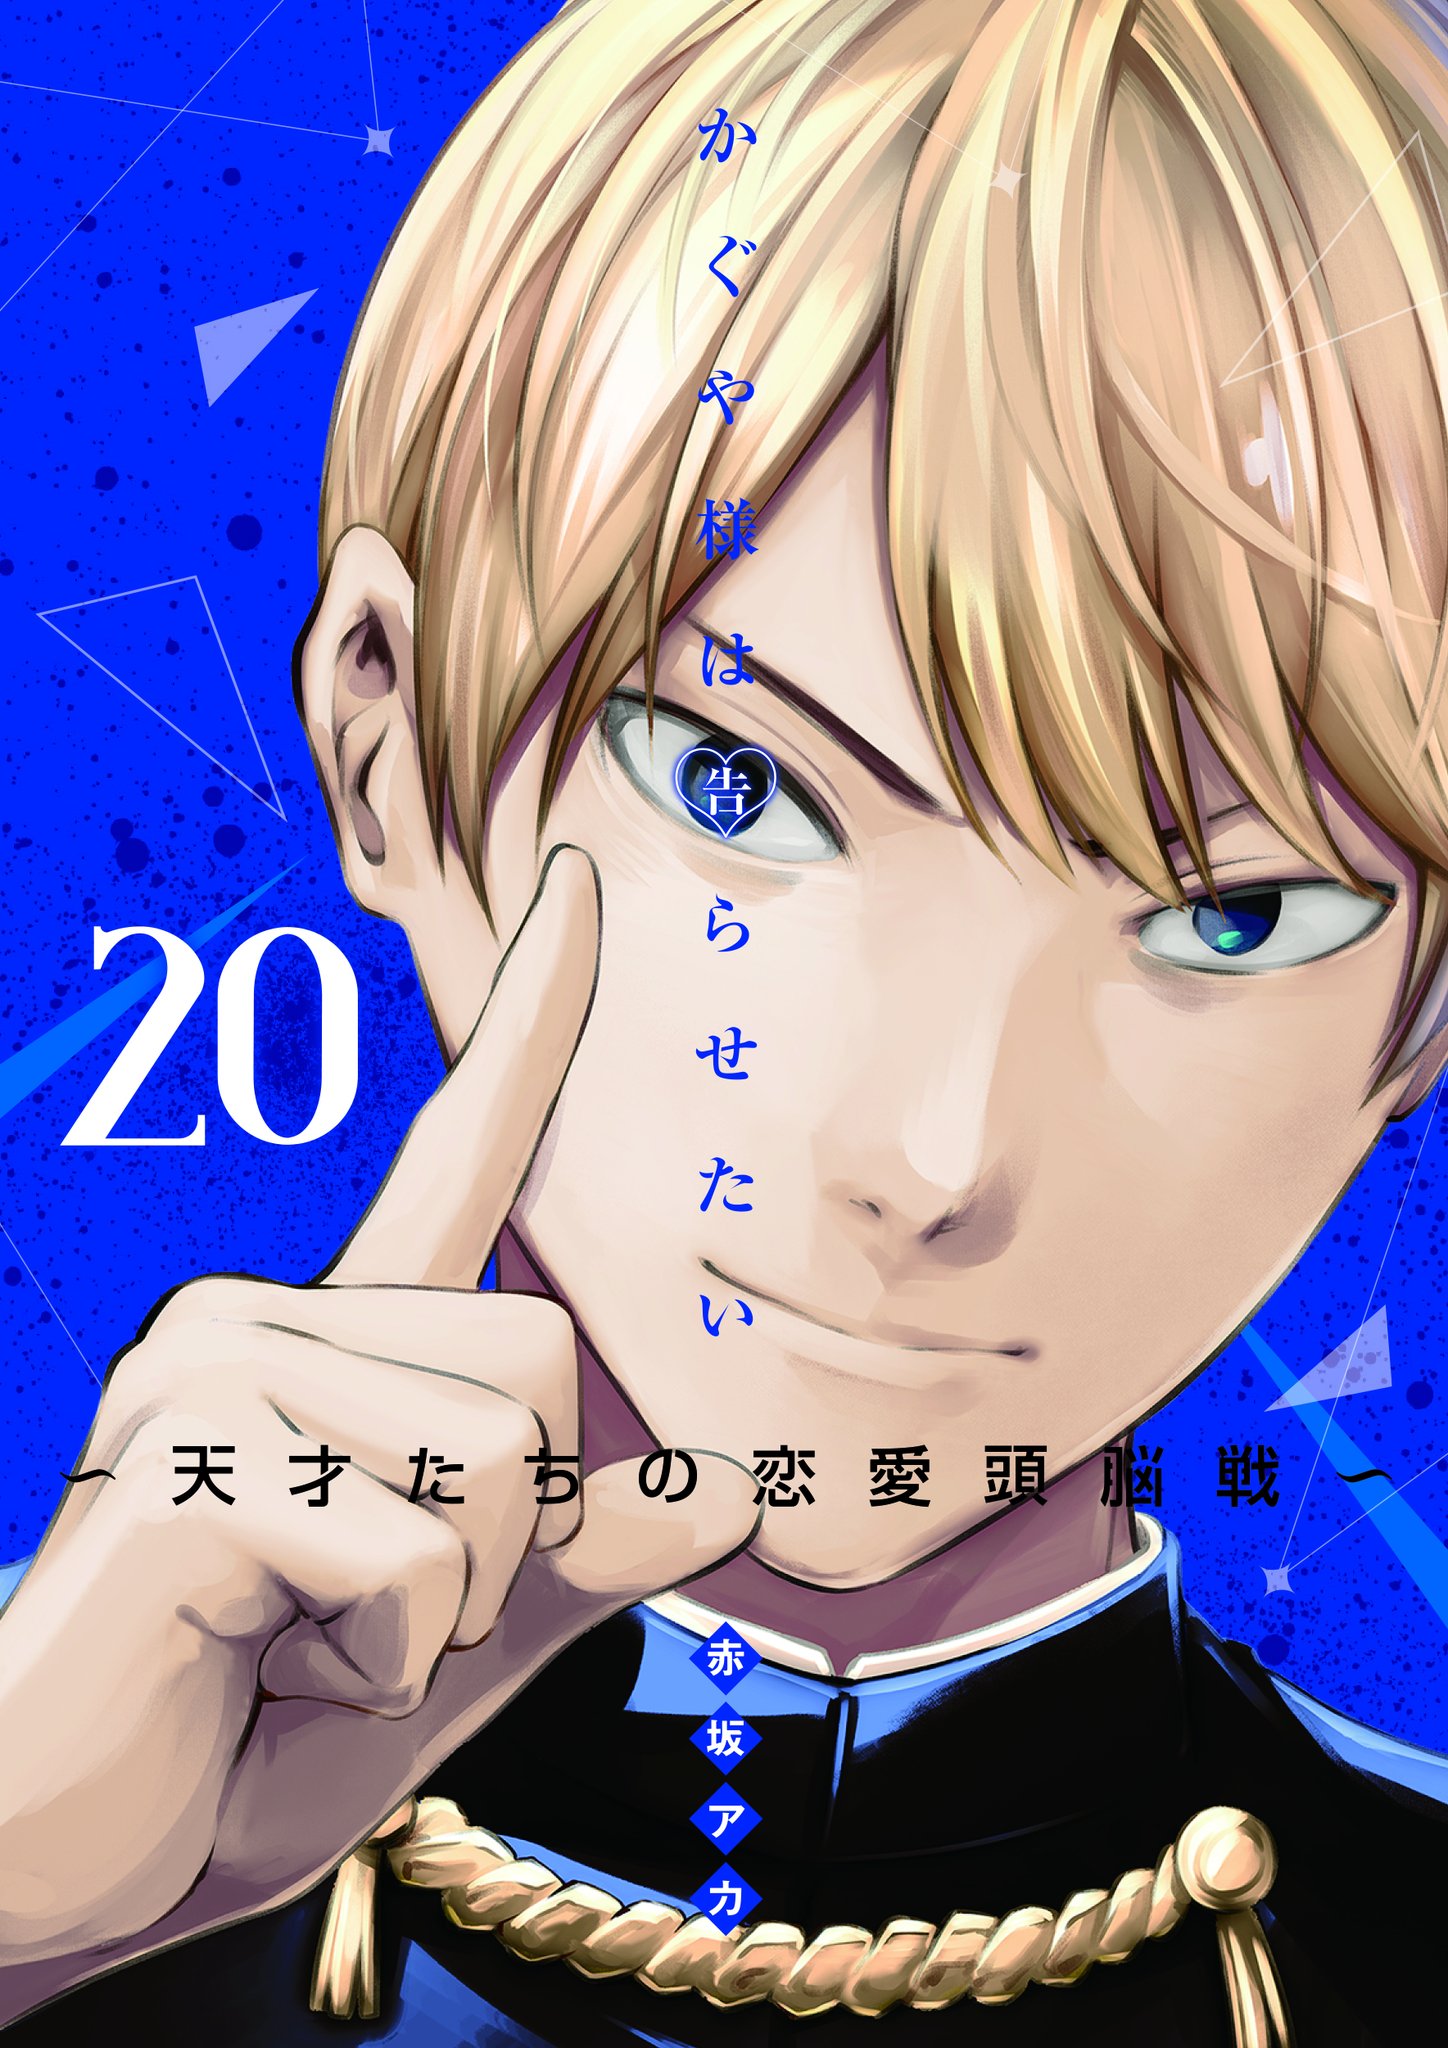 Kaguya-sama Manga ending - volume cover